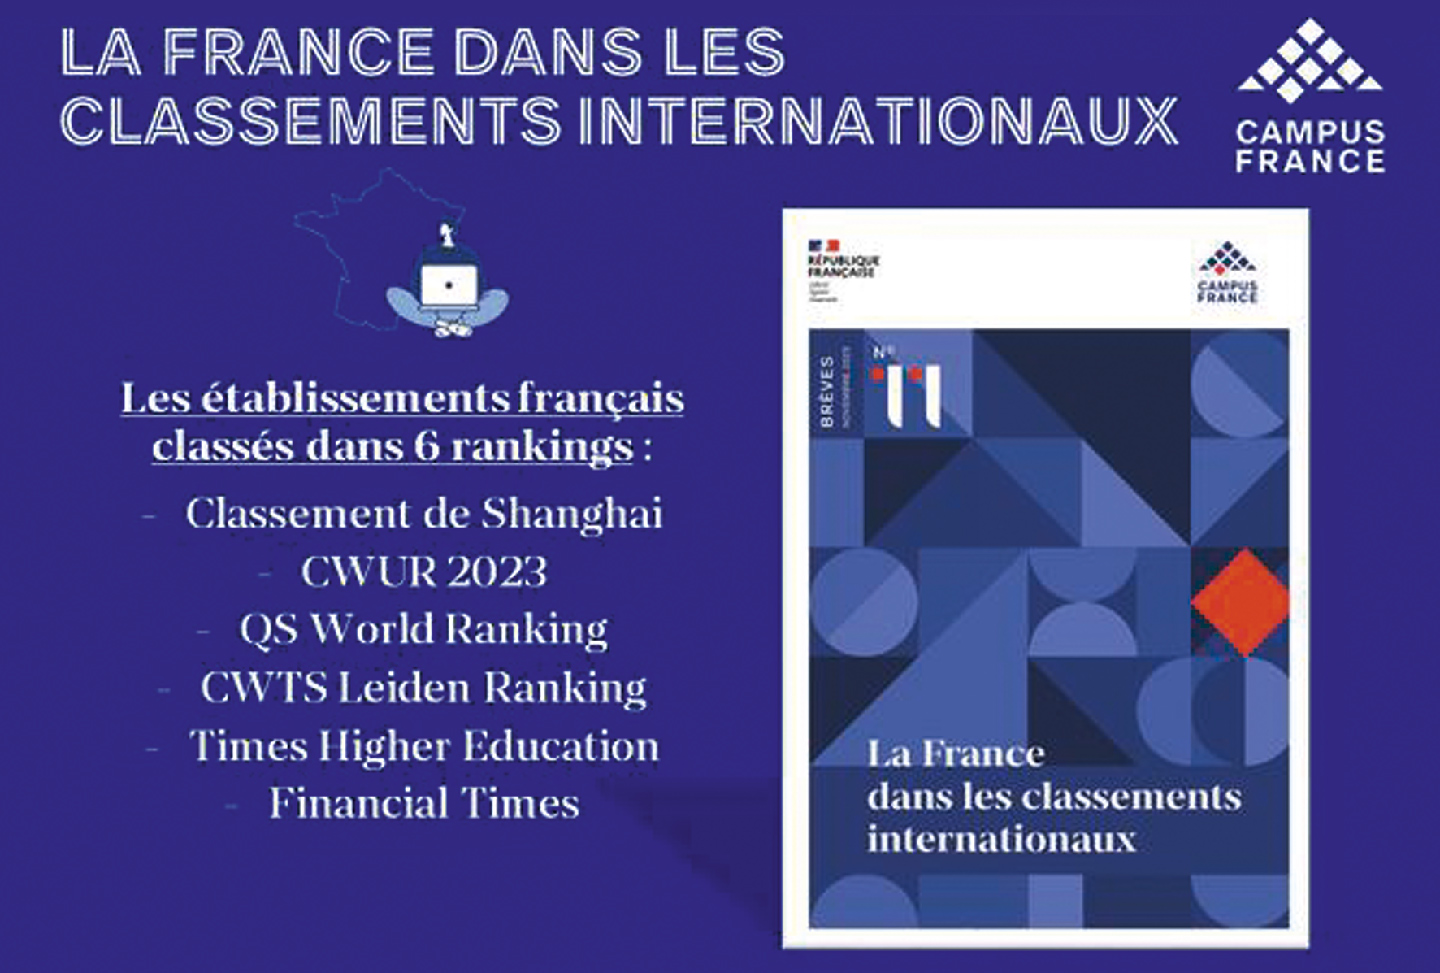 La France dans les classements internationaux